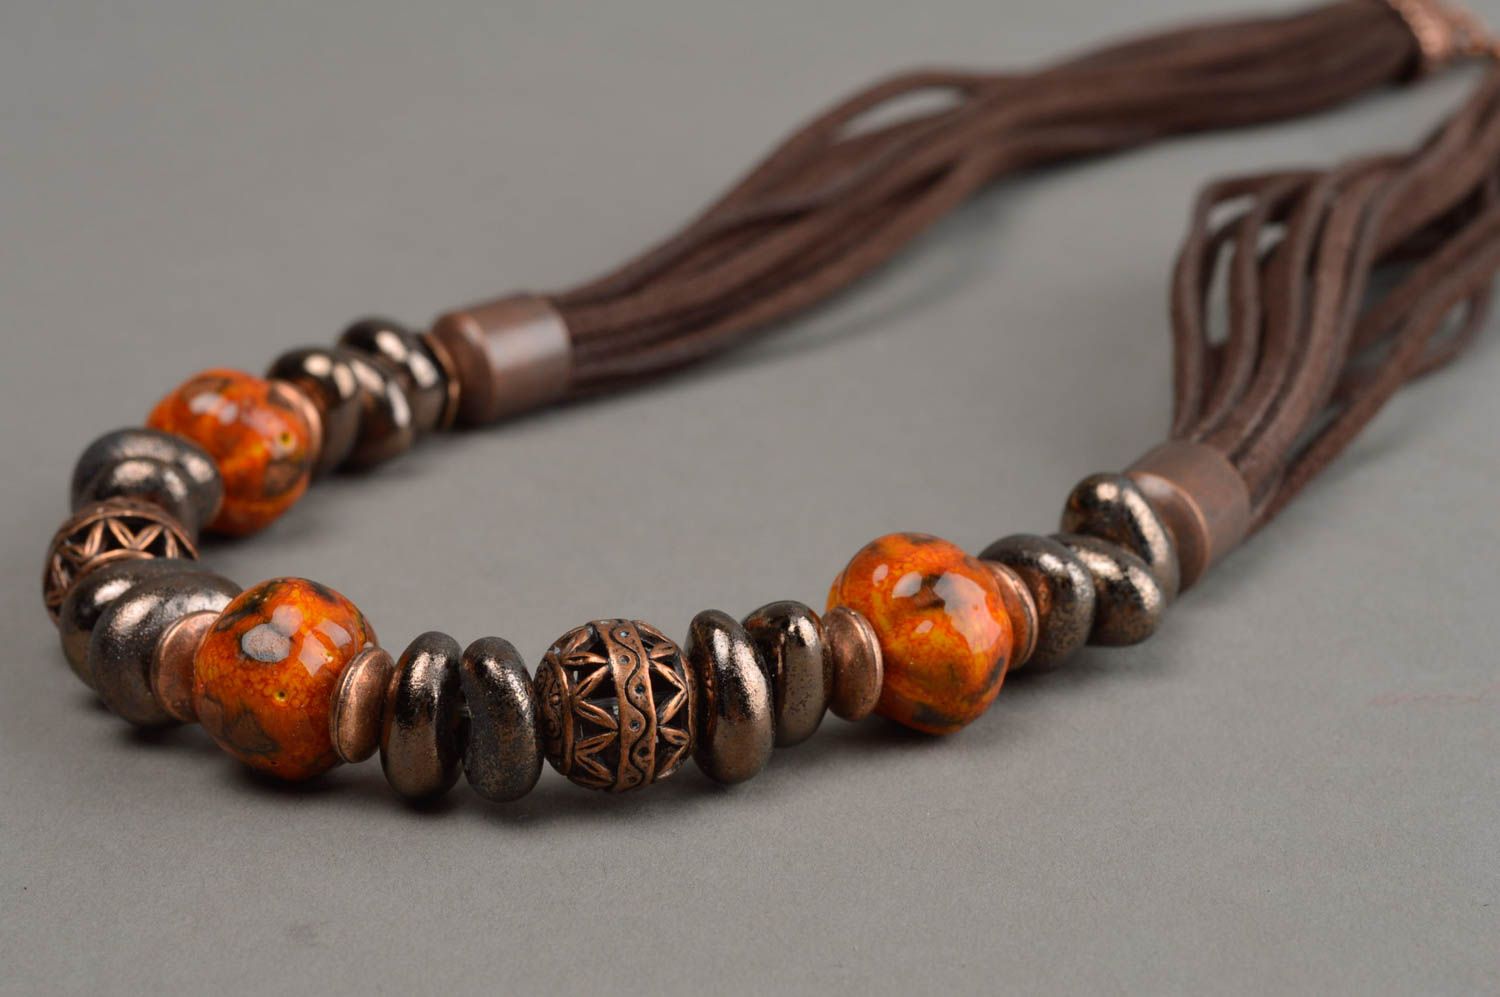 Collier céramique style ethnique marron et orange fait main sur lacet pour femme photo 5